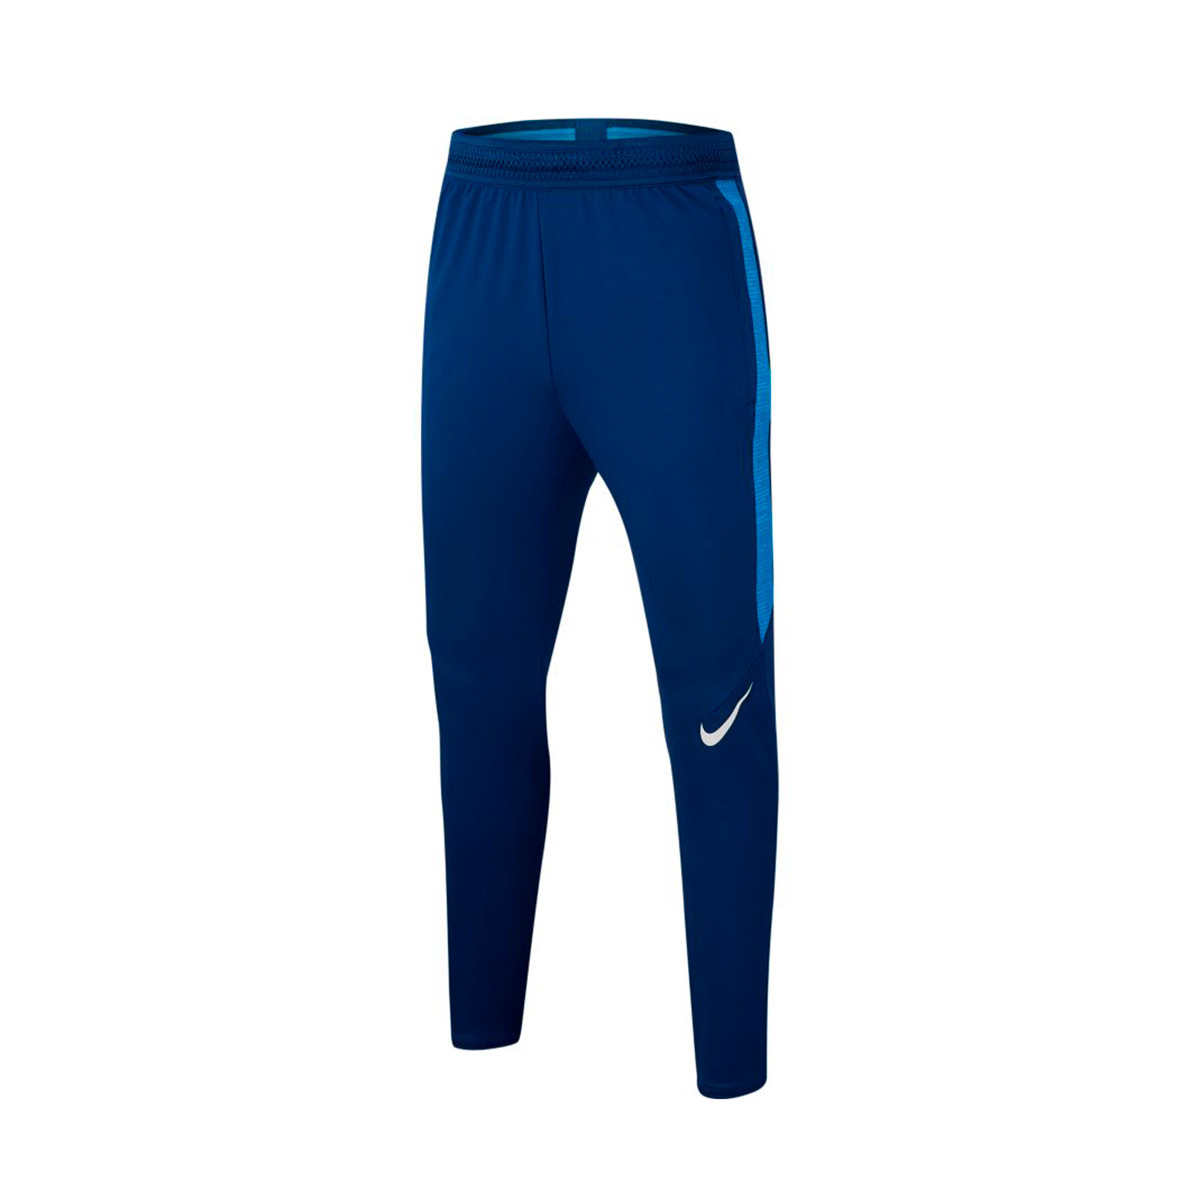 Pantalón largo Nike Dry Strike KZ Niño Coastal blue-Light photo blue-White  - Tienda de fútbol Fútbol Emotion